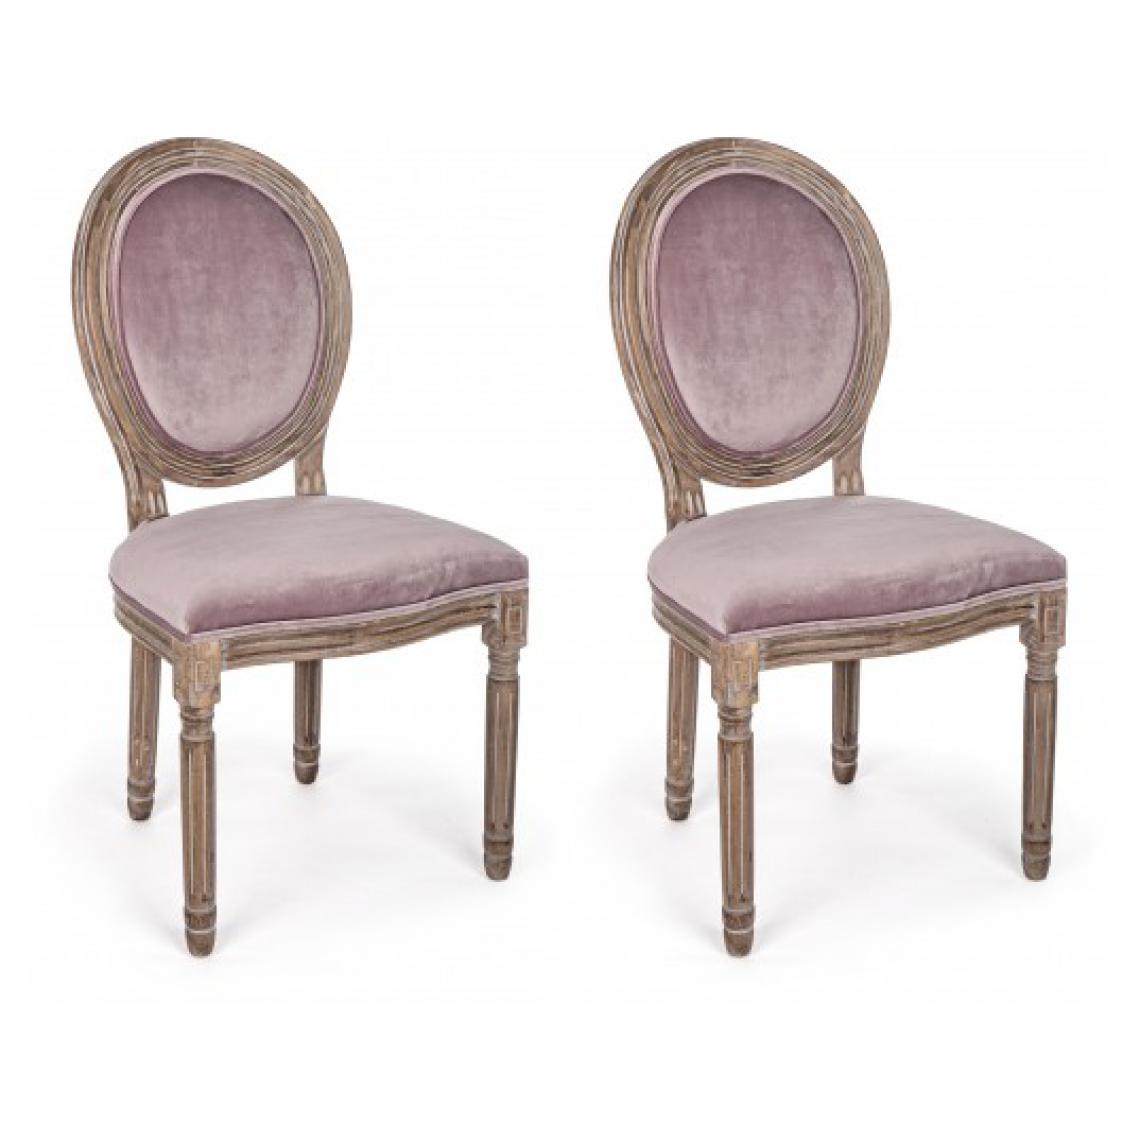 Bizzotto - Chaise Lot de 2 chaises Mathilde rose - Chaises